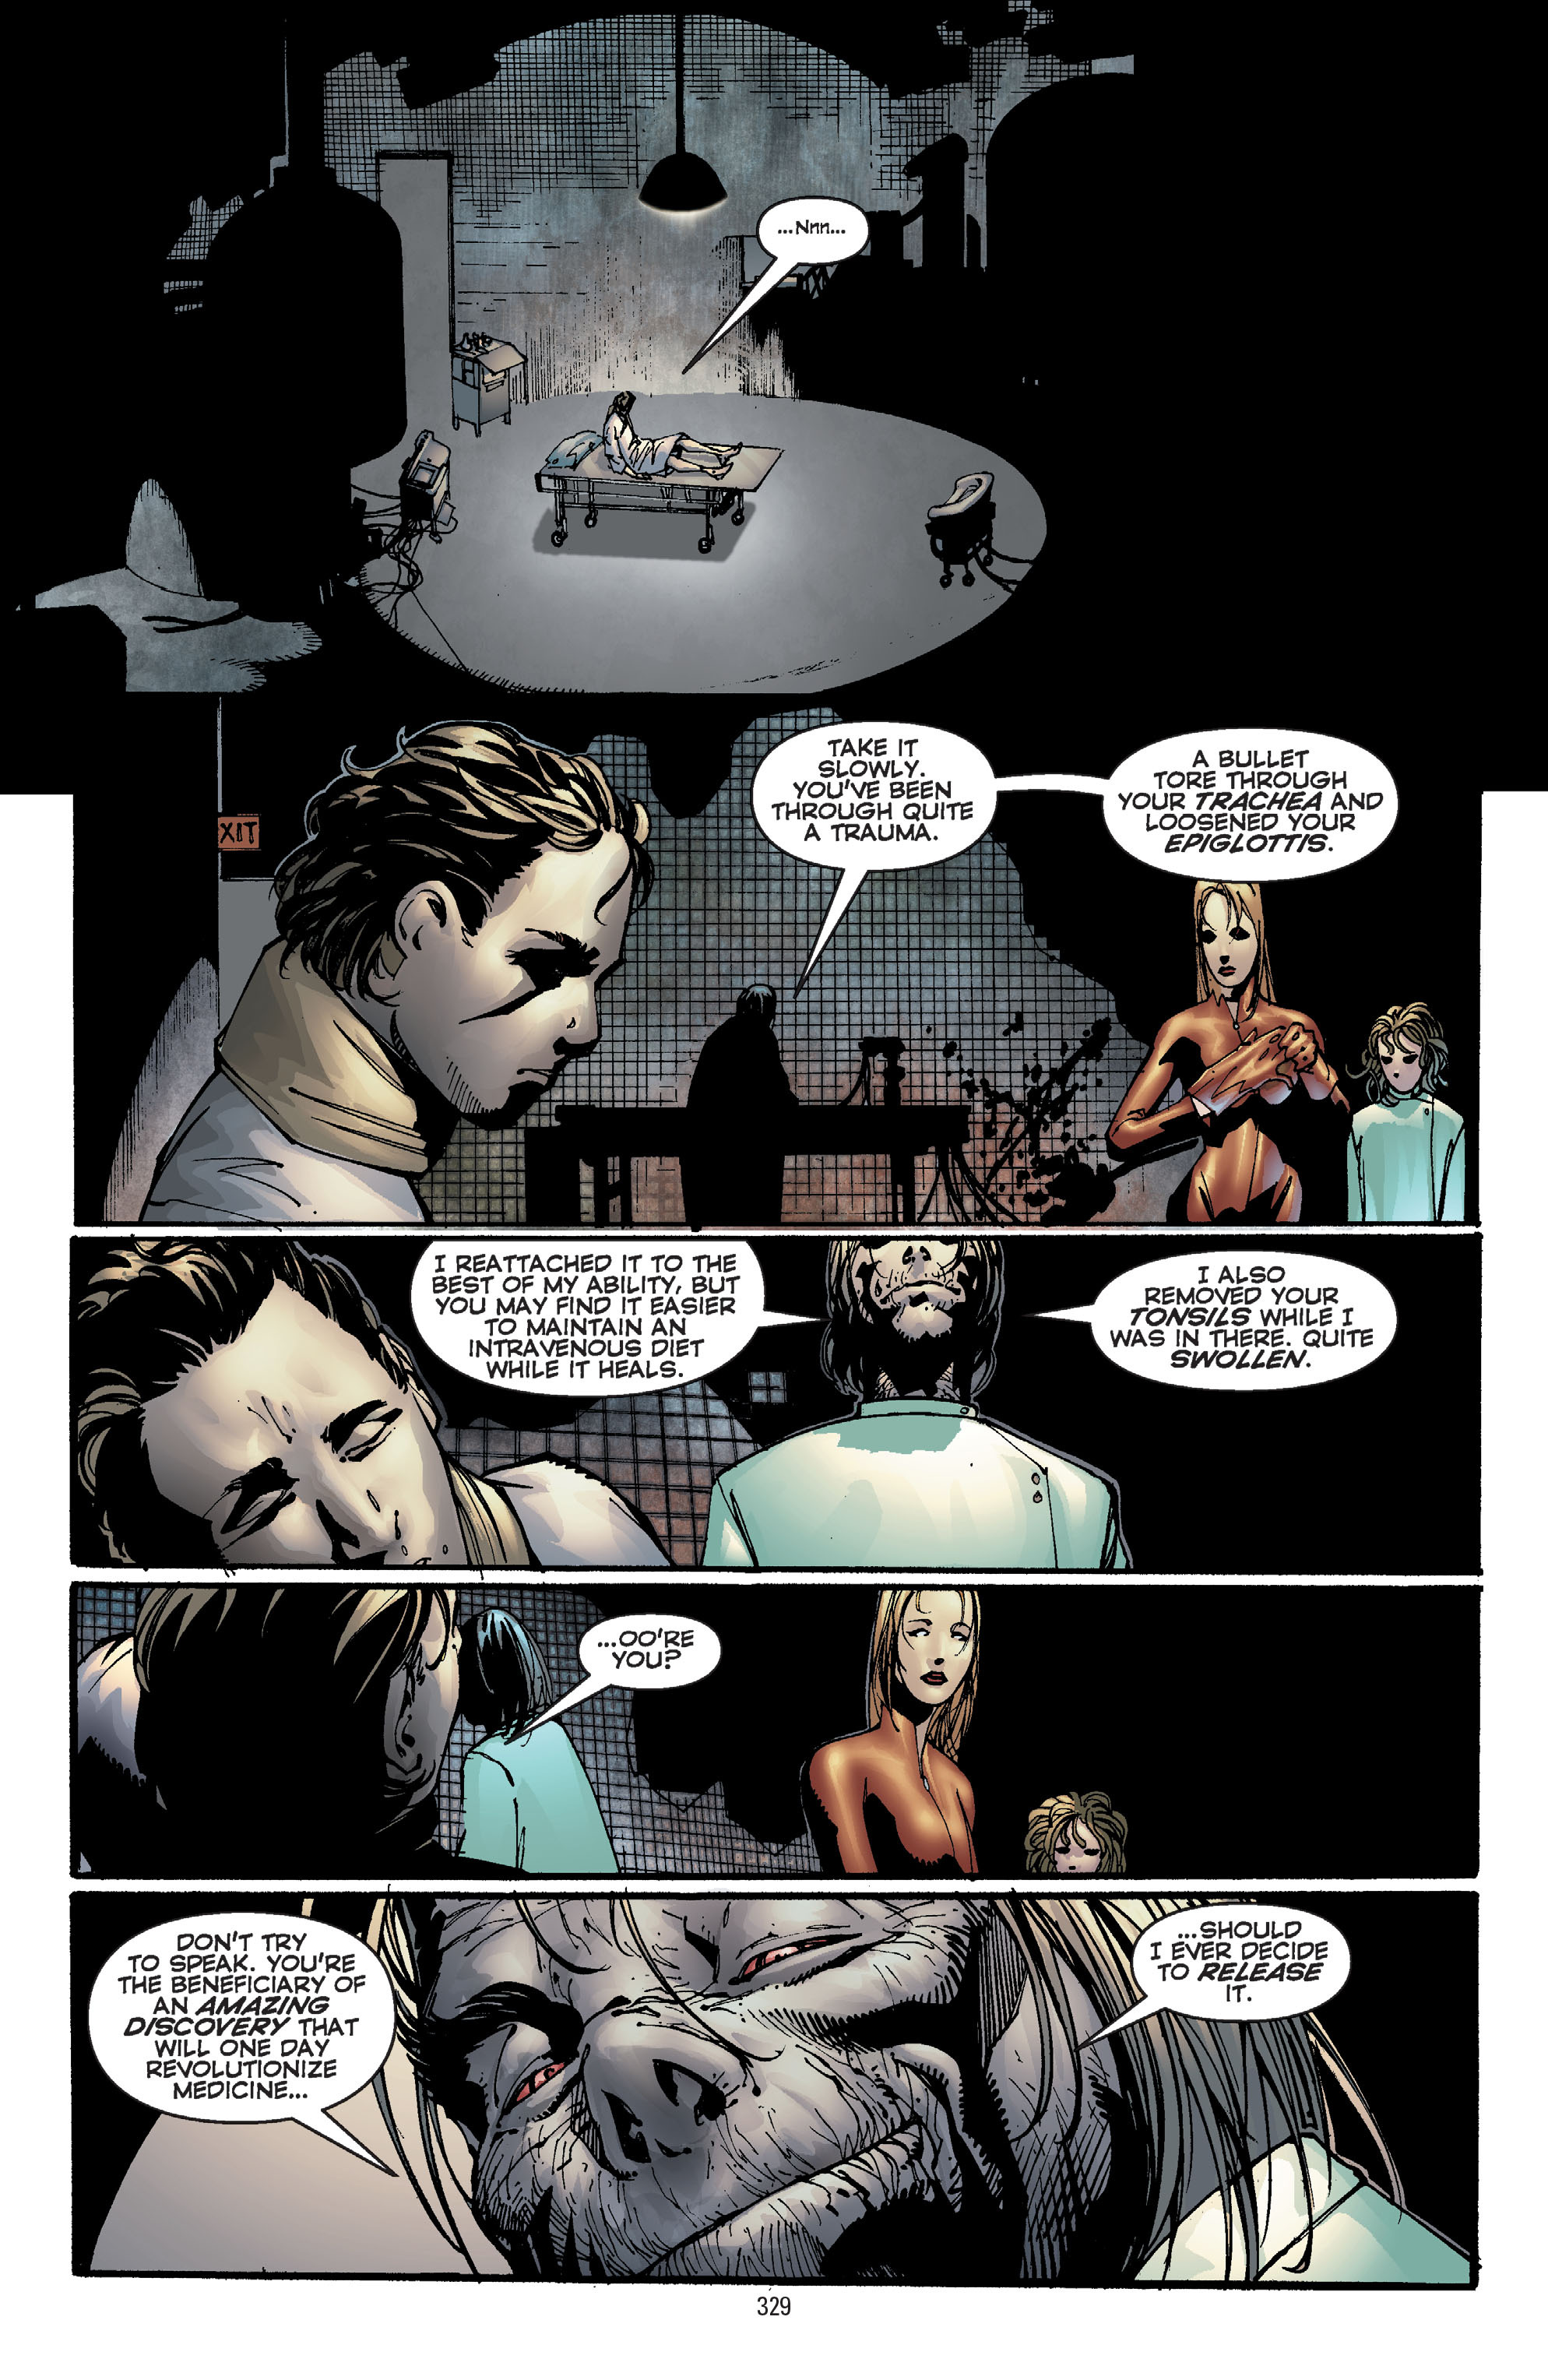 DC Comics/Dark Horse Comics: Justice League Full #1 - English 319